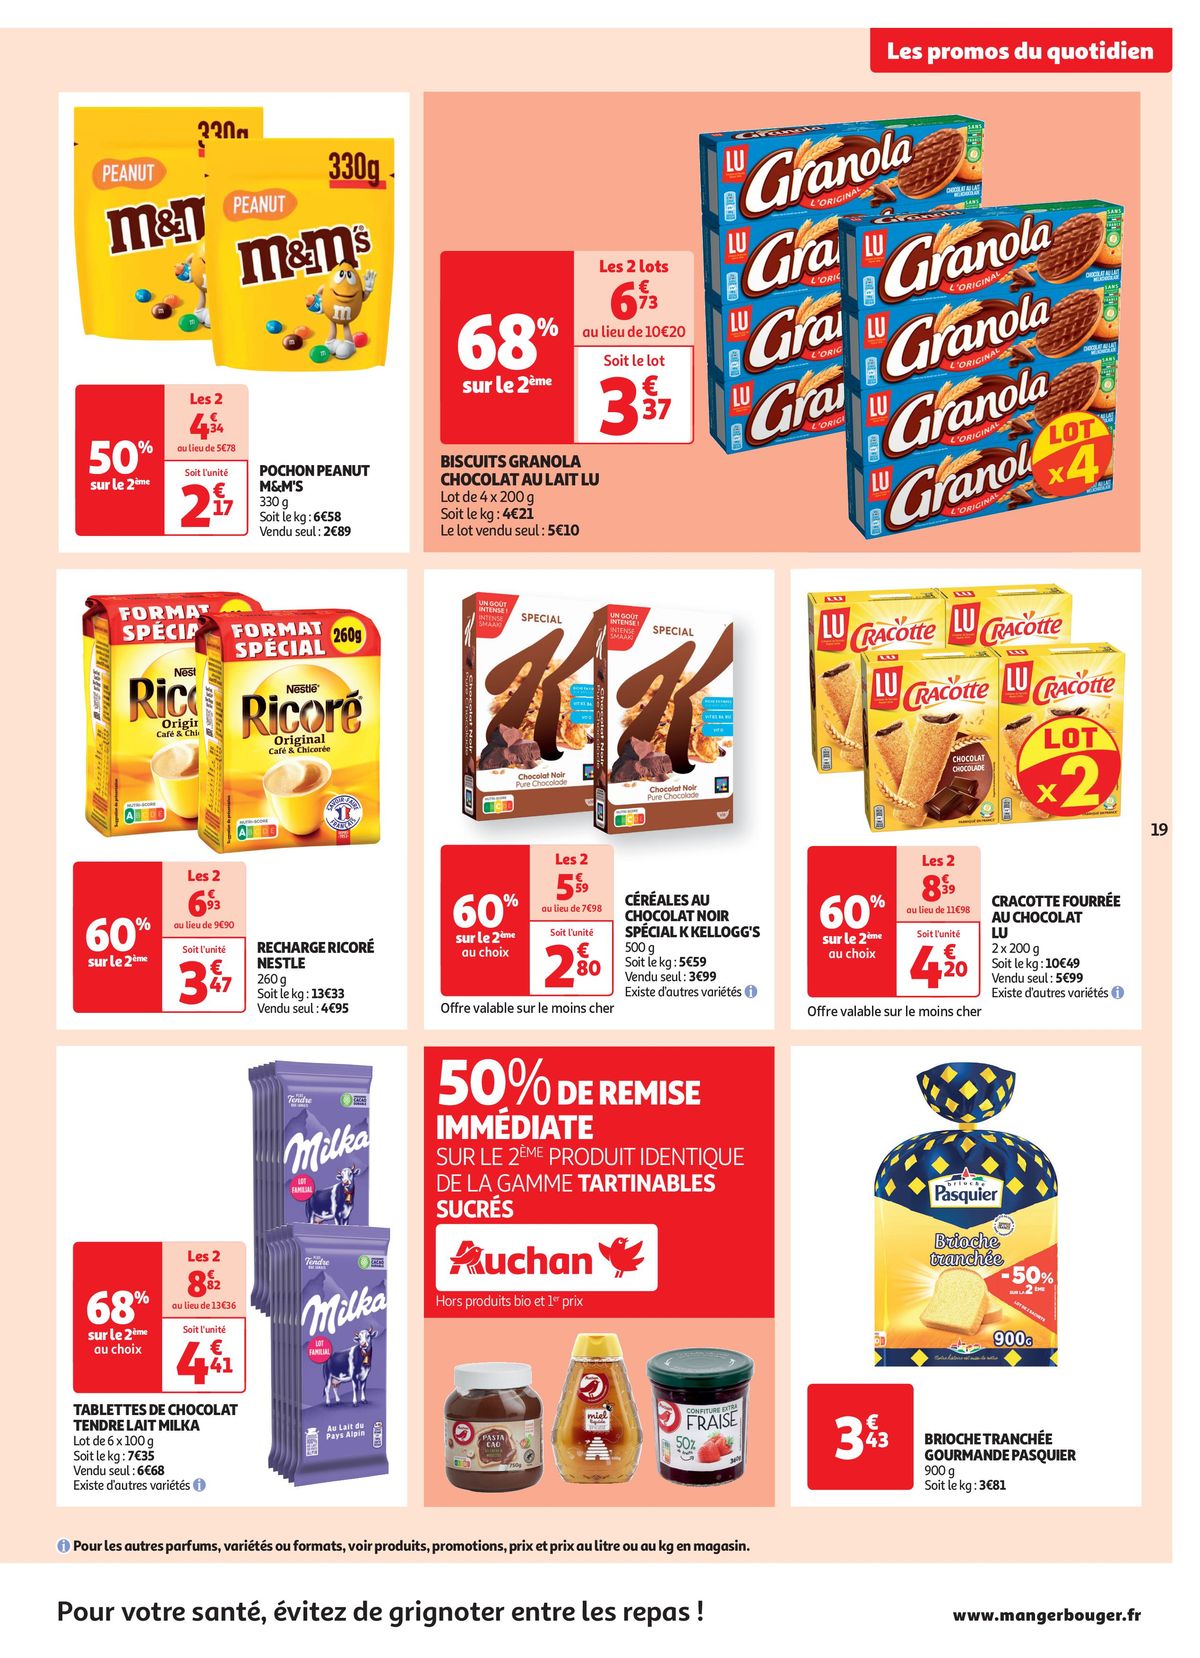 Catalogue Les 25 jours Auchan, c'est parti !, page 00019